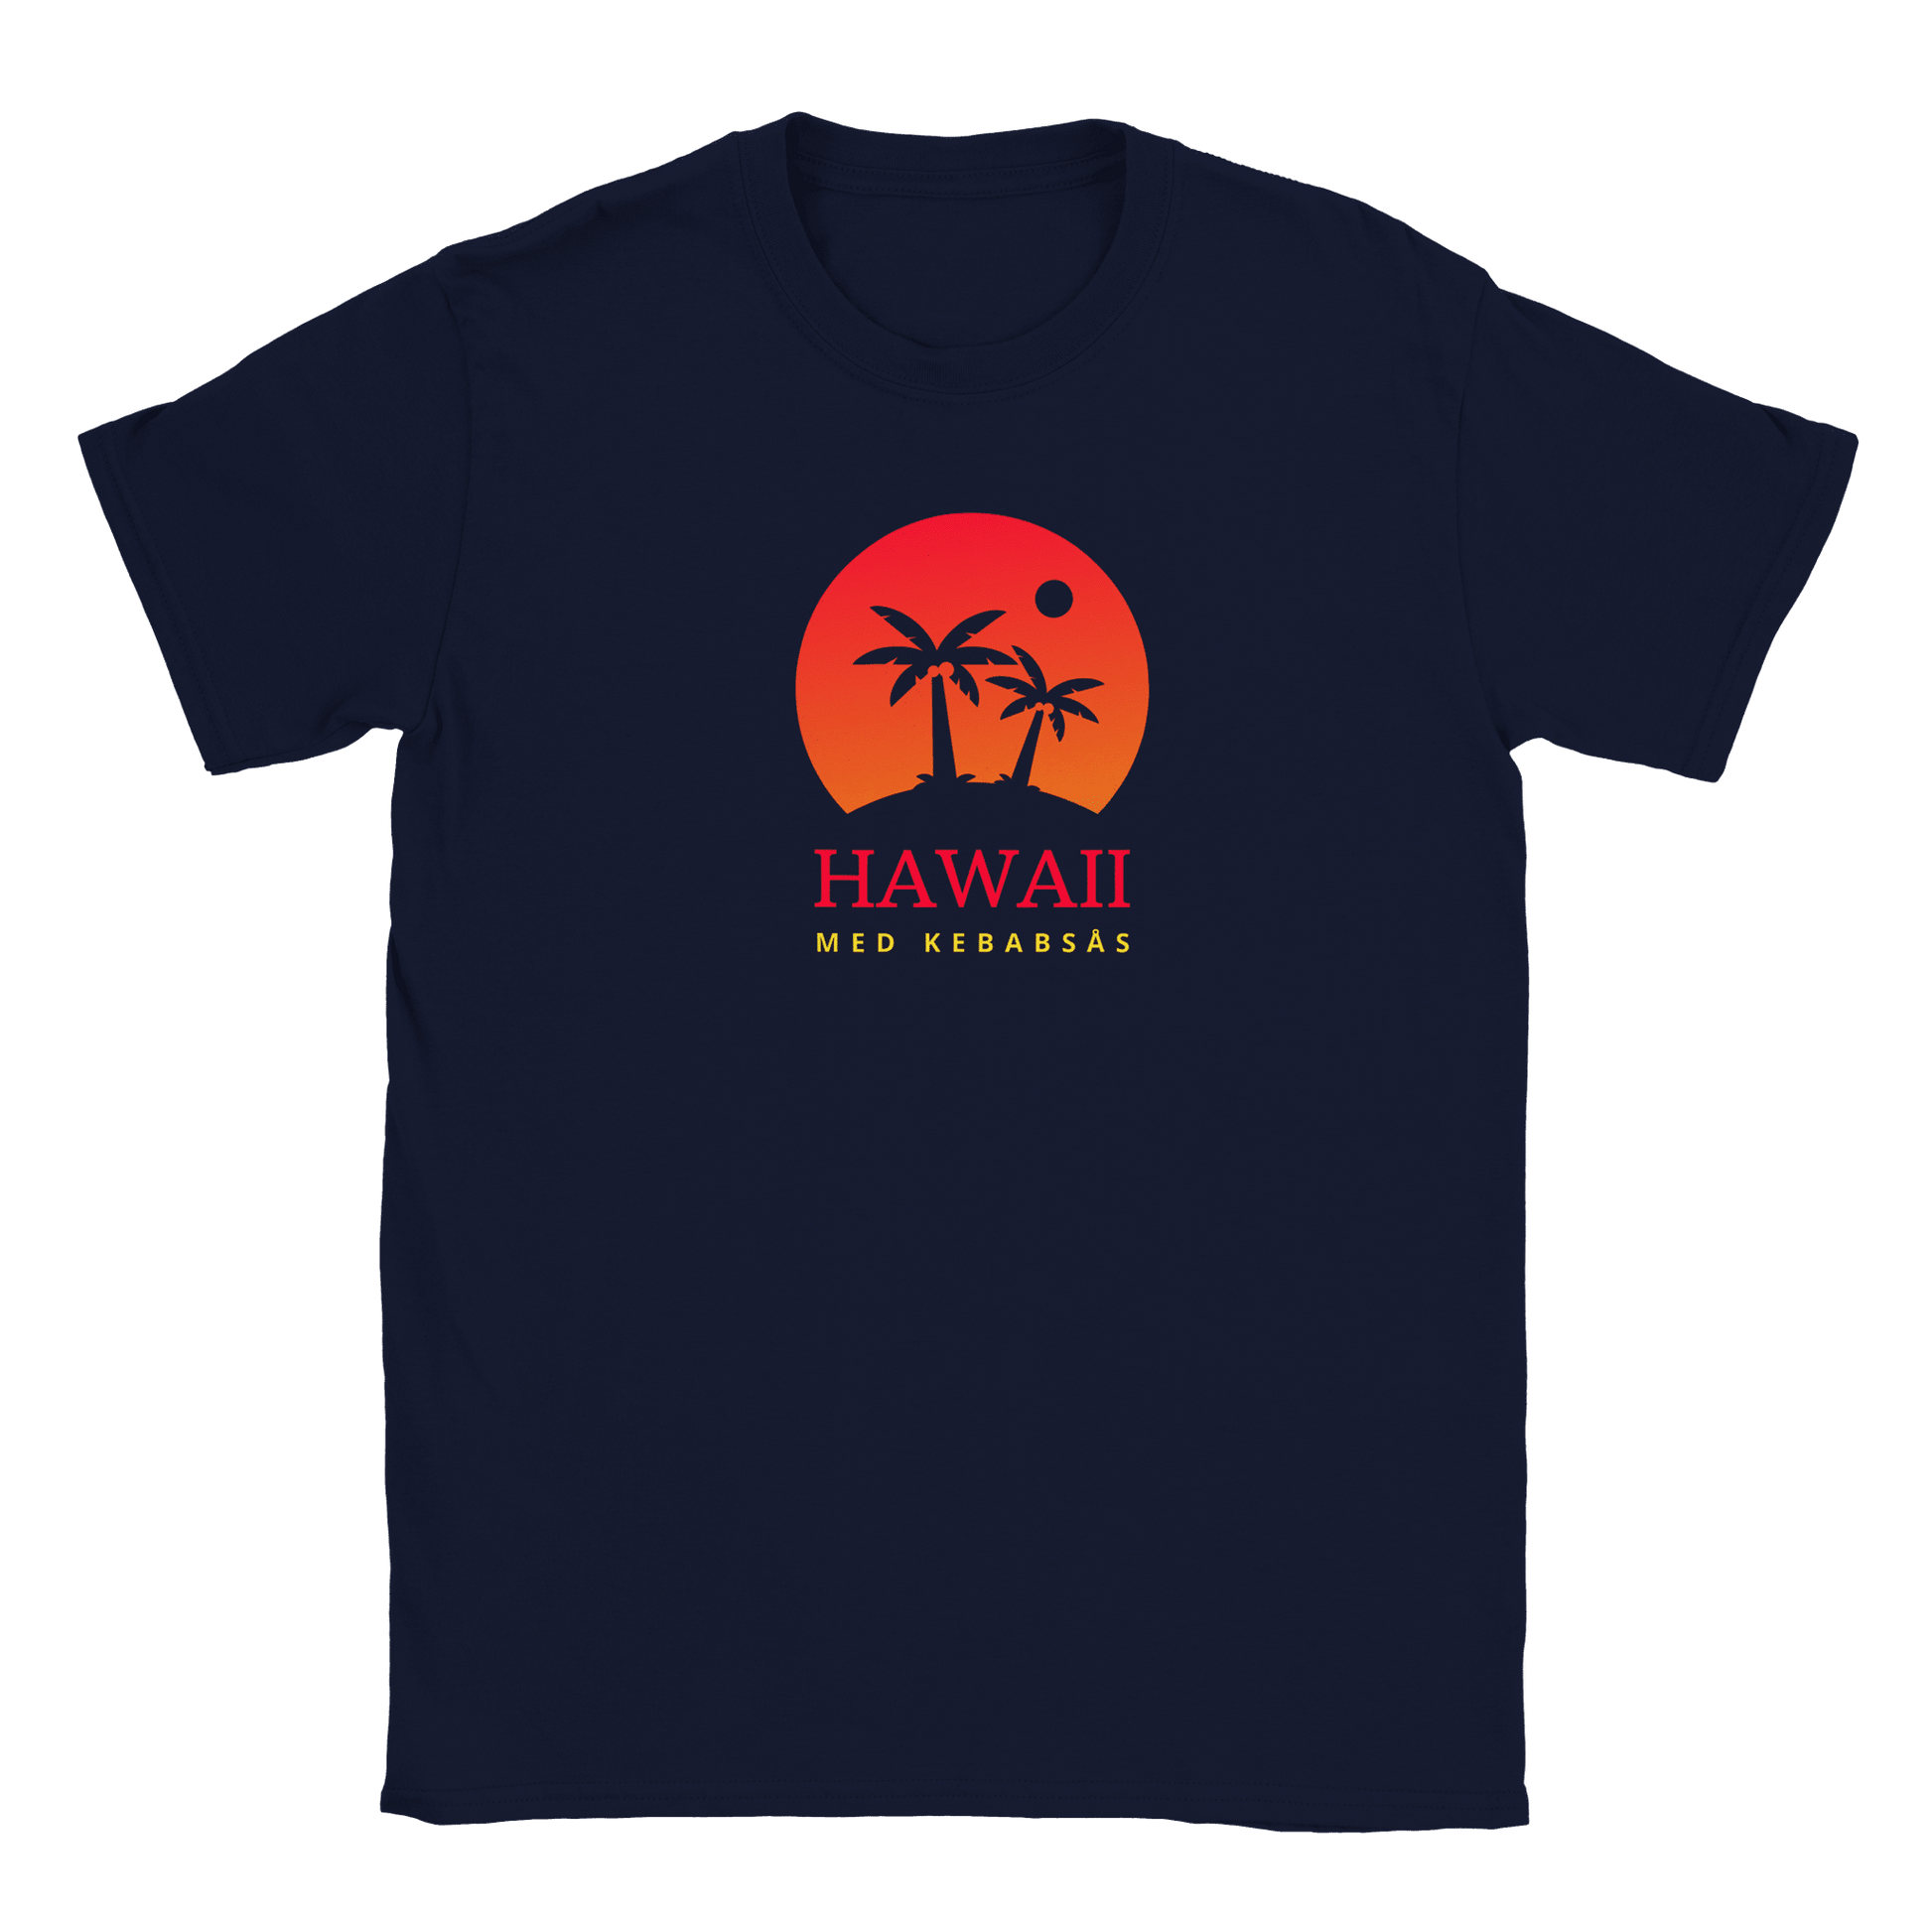 Hawaii med kebabsås - T-shirt för barn Marinblå